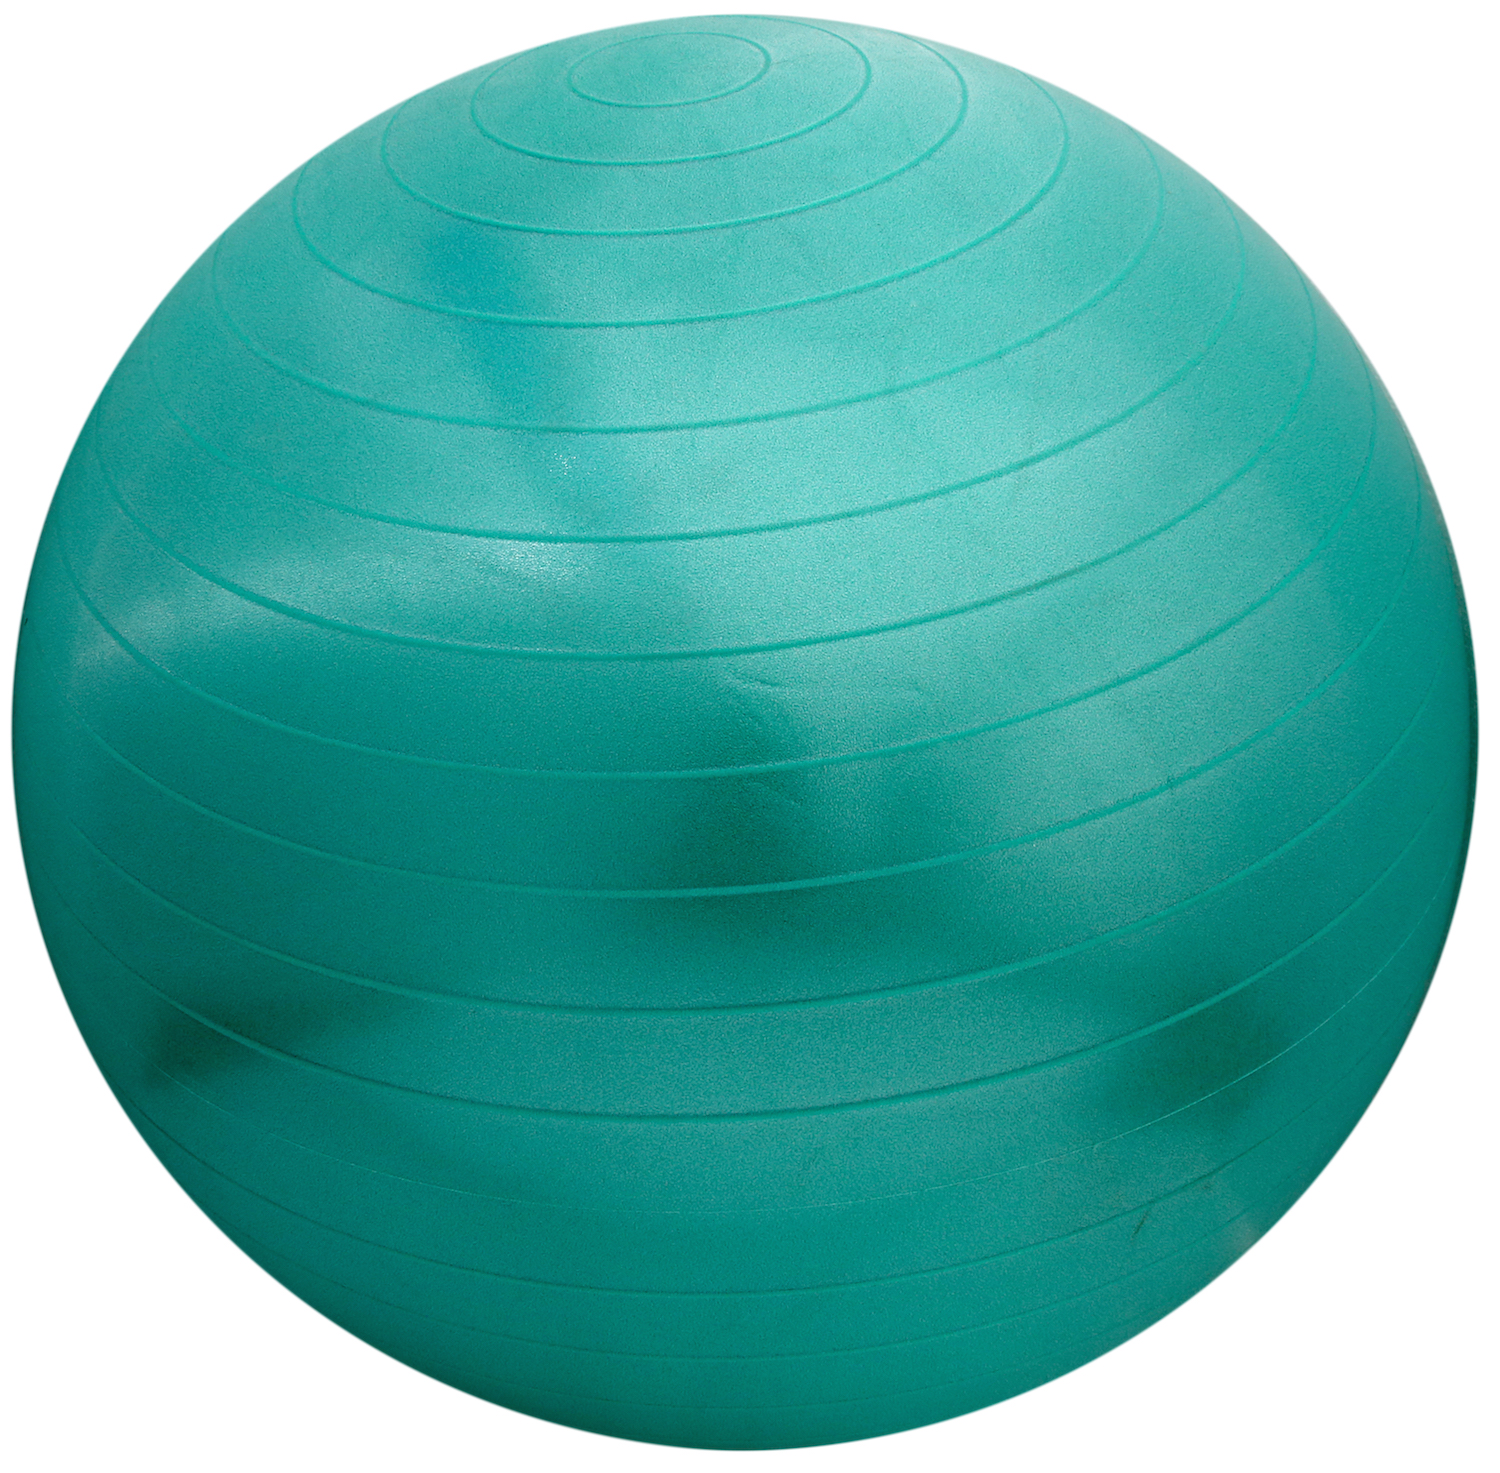 Gym Ball PNG - 15731